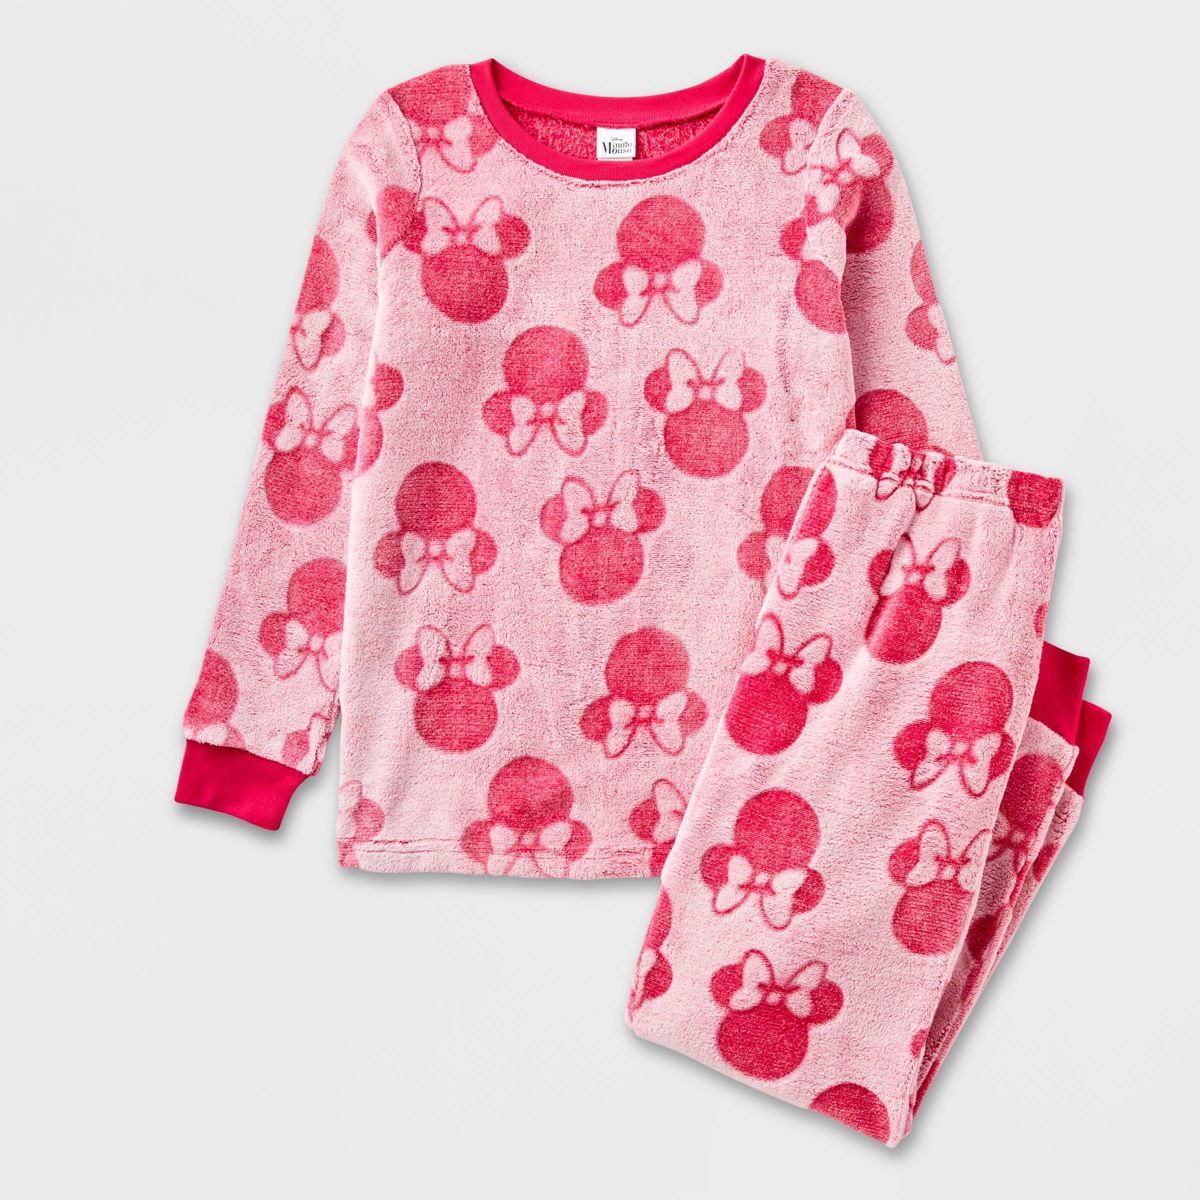 Girls' Disney Minnie Mouse 2pc Gifting Pajama Set - Pink | Target